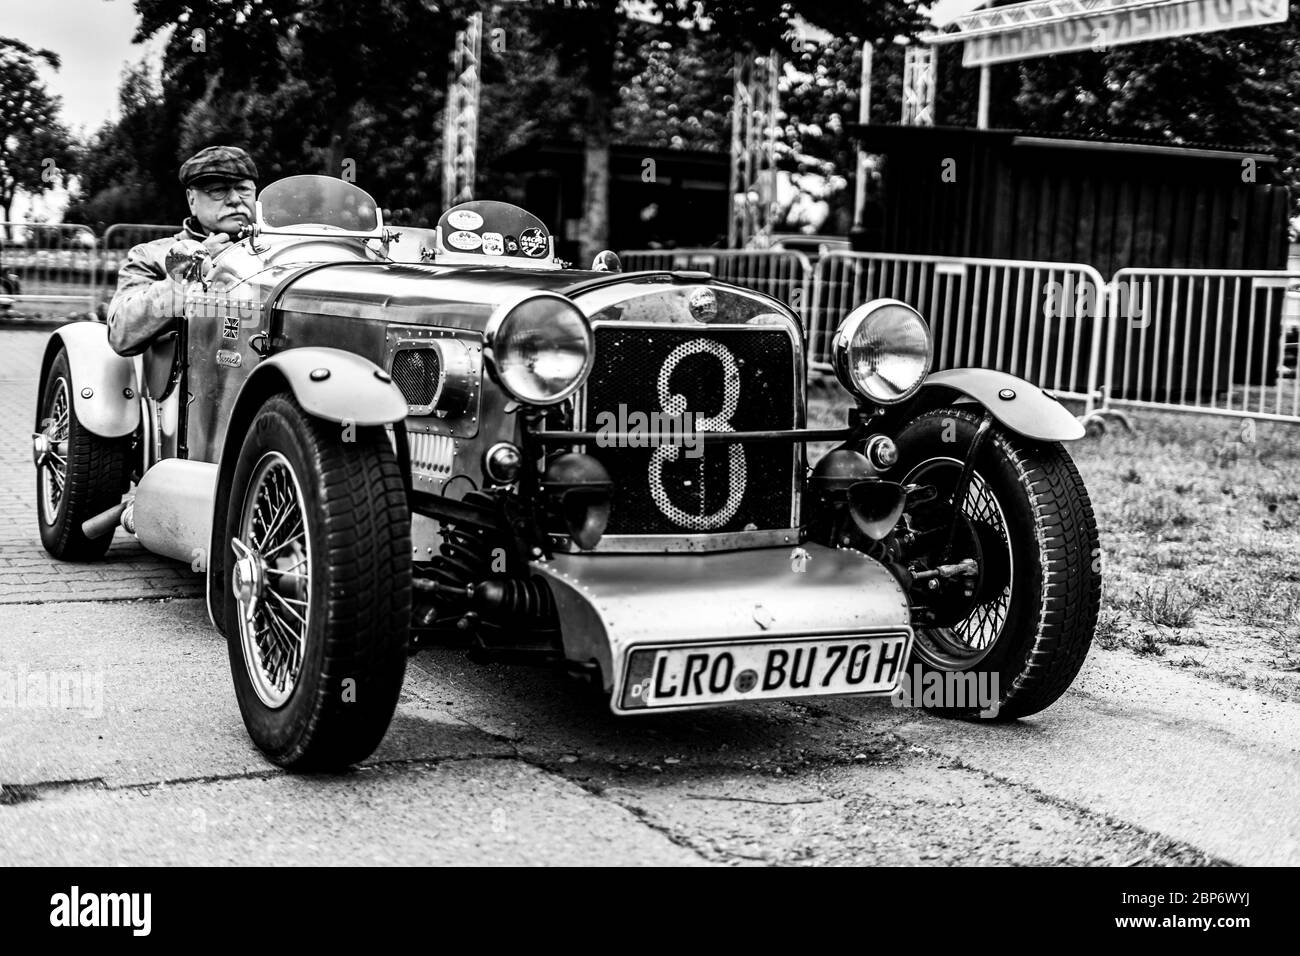 PAAREN IM GLIEN, Germania - Giugno 08, 2019: Sport auto Triumph Dolomite dritto 8, 1935. In bianco e nero. Die Oldtimer Show 2019. Foto Stock